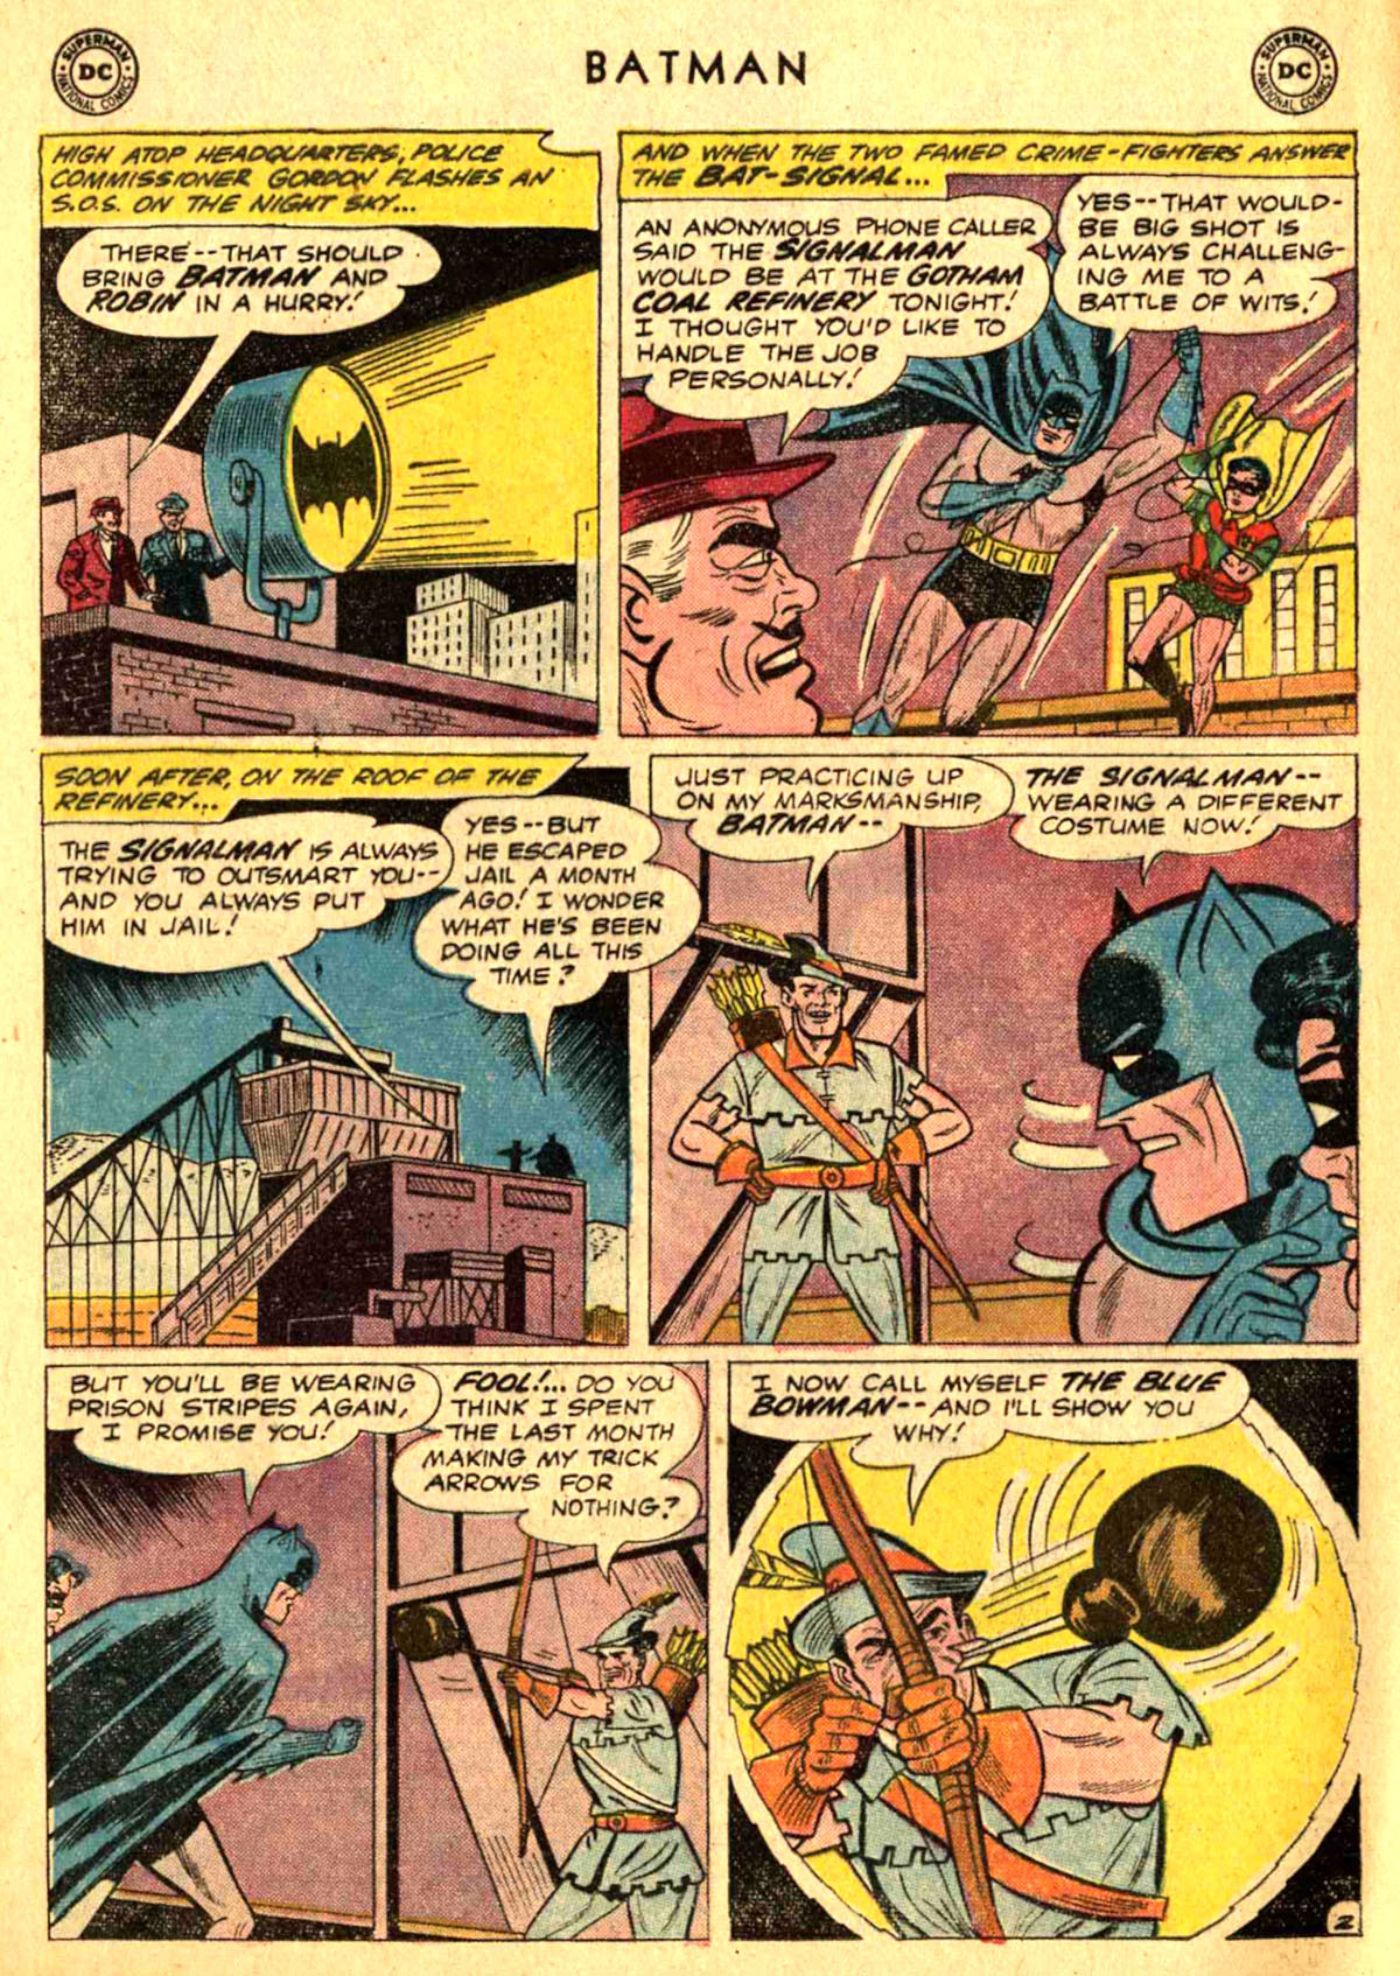 1 Güçsüz Justice League Kahramanı Batman'i Resmen Yenebilir - Dünyadan Güncel Teknoloji Haberleri